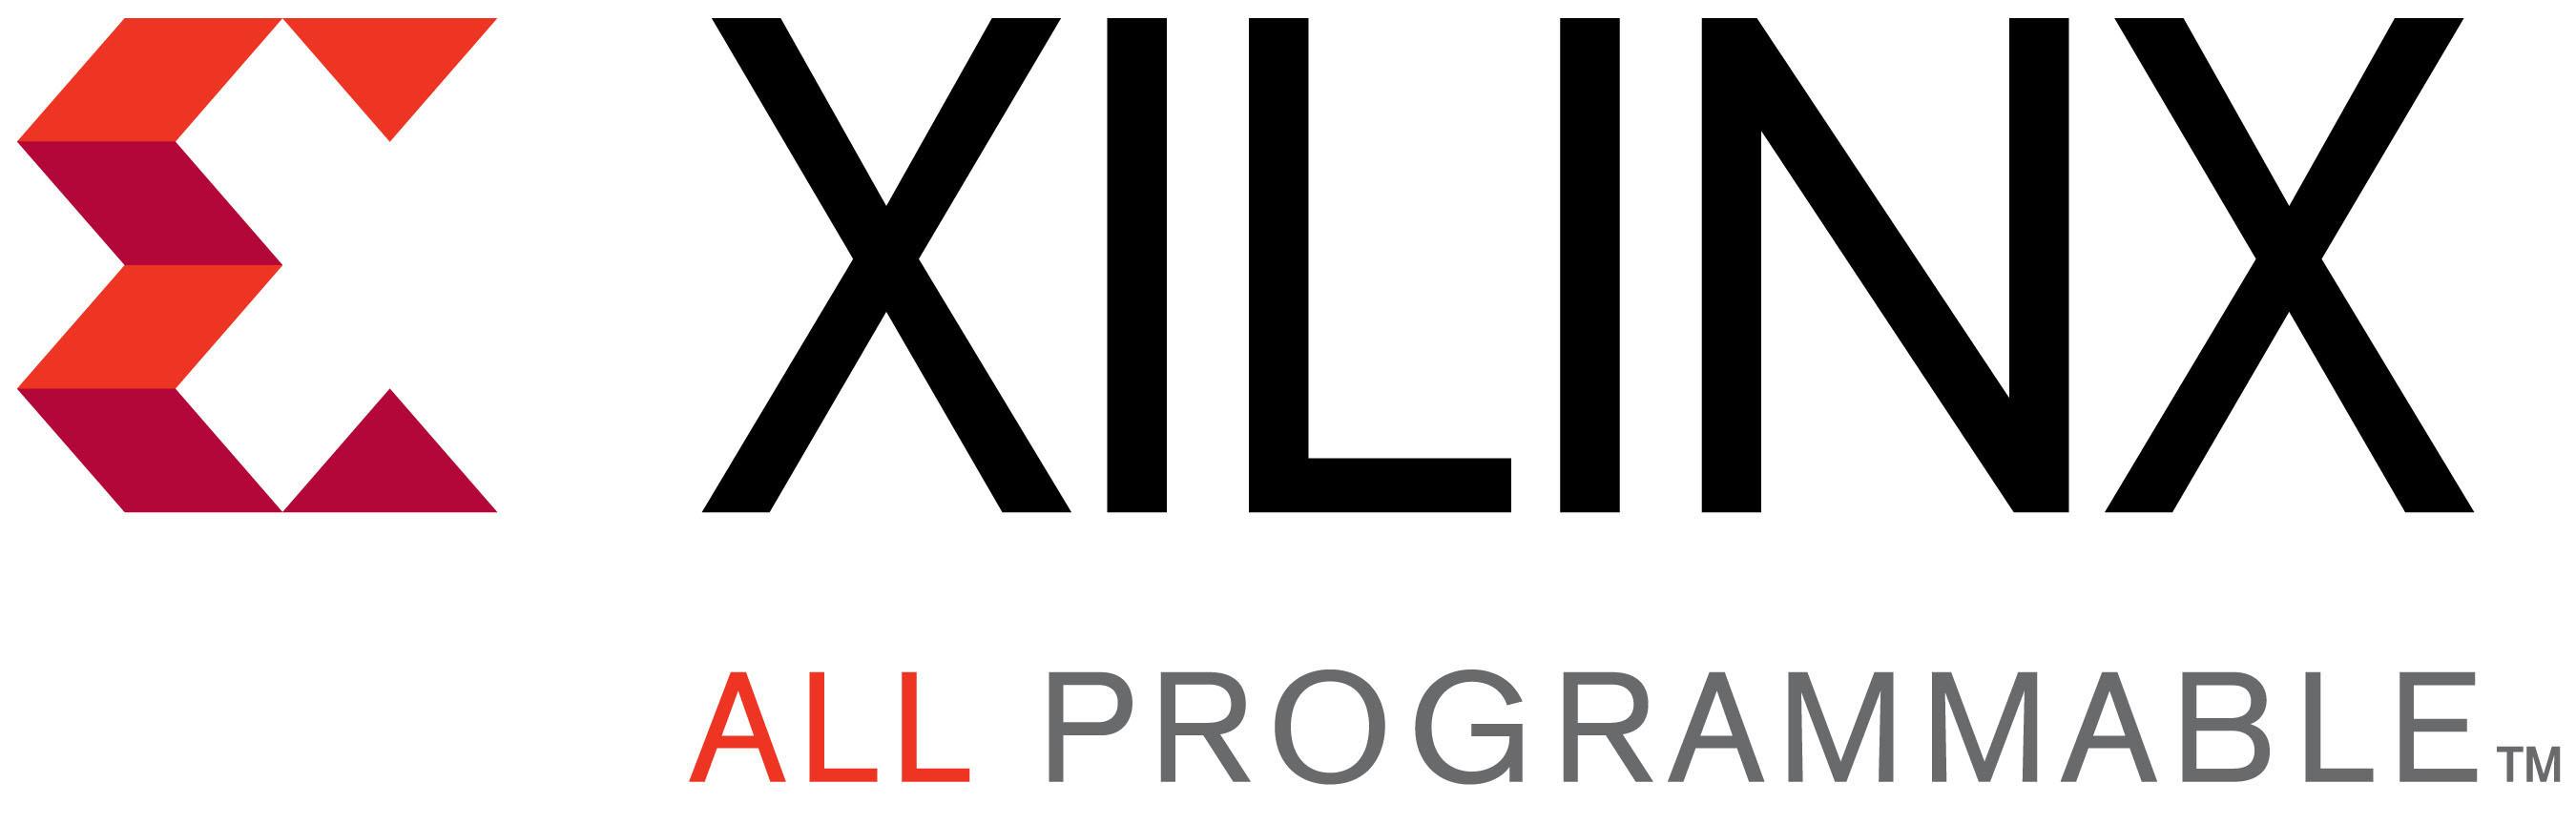 Xilinx Logo - XILINX LOGO - CoreEL Technologies